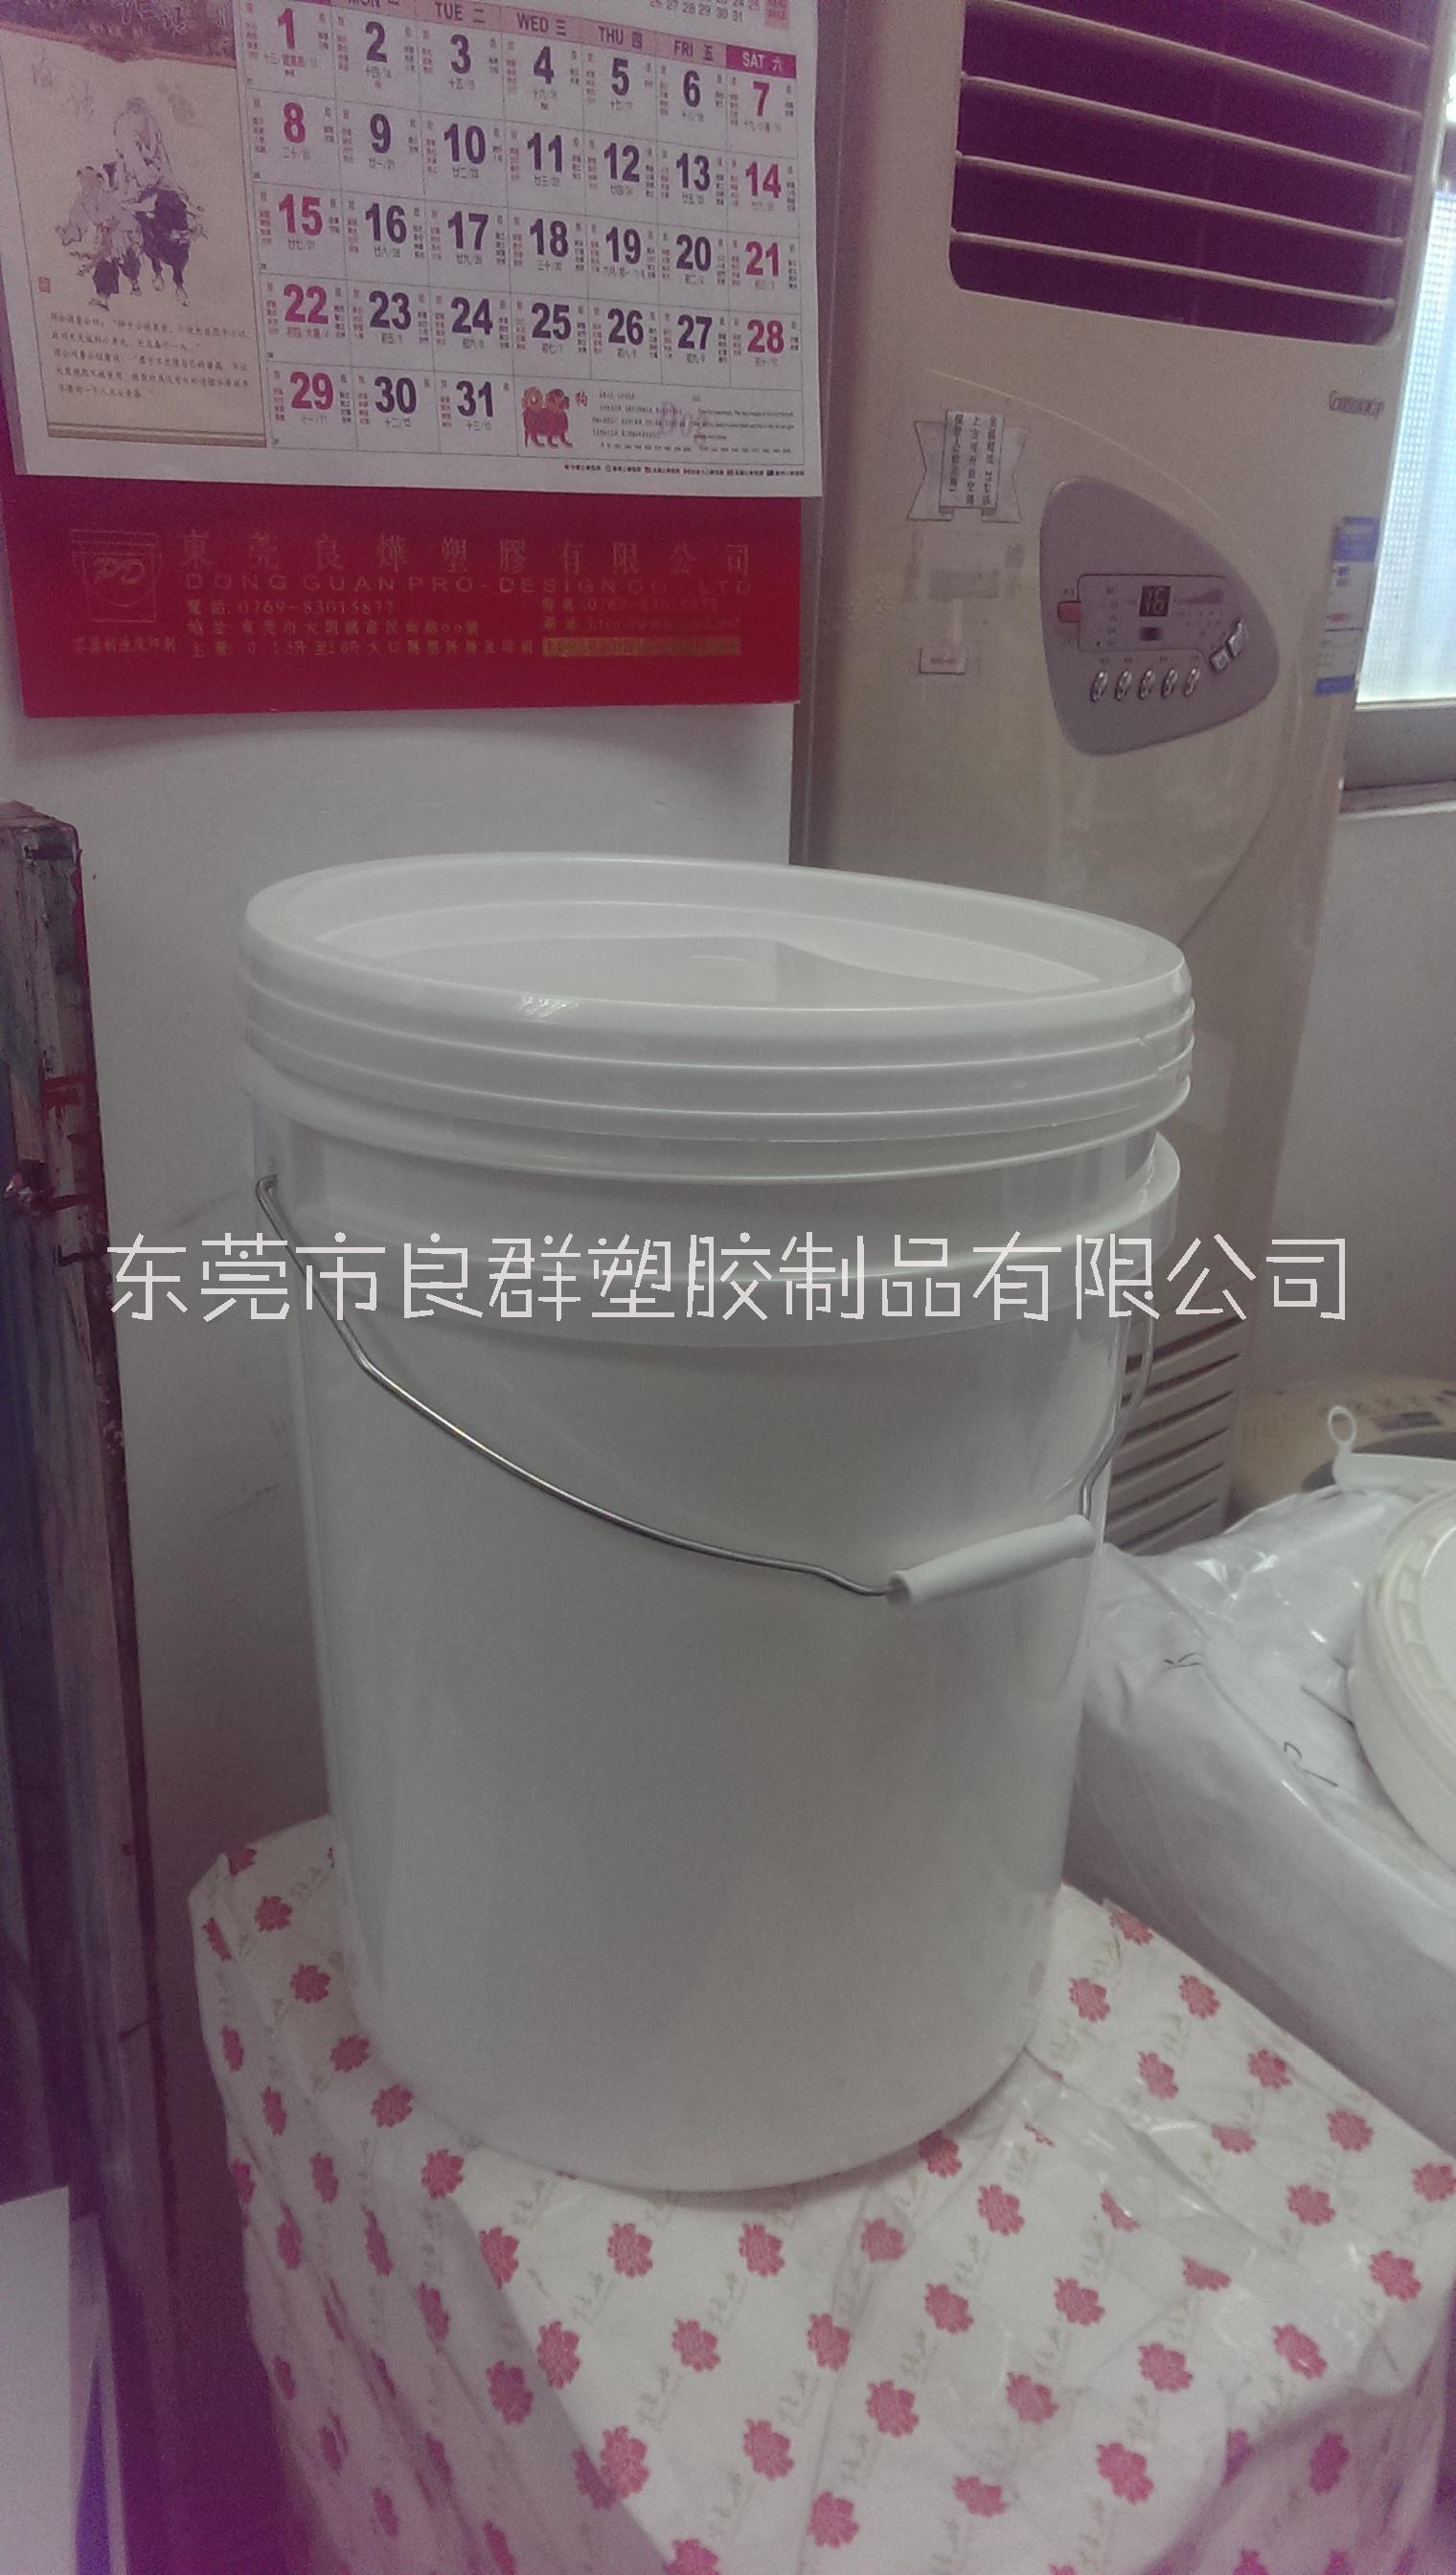 胶浆桶 东莞塑胶制品厂家 优质塑料桶供应 25L胶浆桶